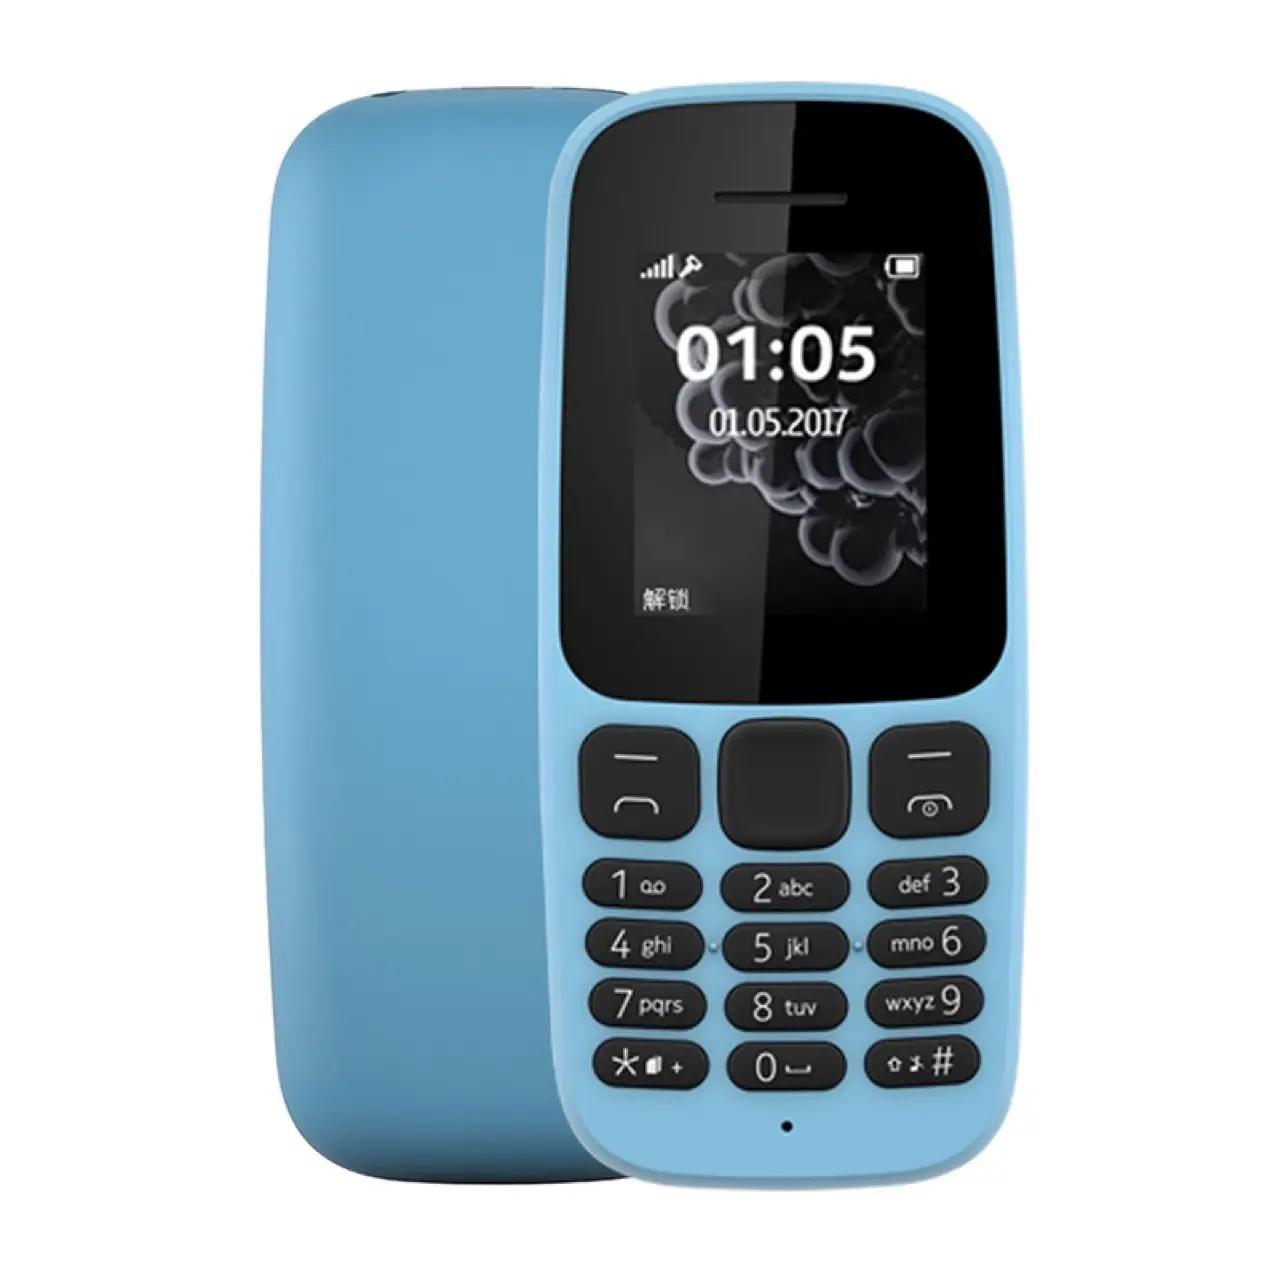 बुजुर्गों और सीधे बटन वाले मोबाइल फोन 105 अल्ट्रा लॉन्ग स्टैंडबाय के लिए नोकिया के सीमा पार विदेश व्यापार 2जी जीएसएम के लिए उपयुक्त